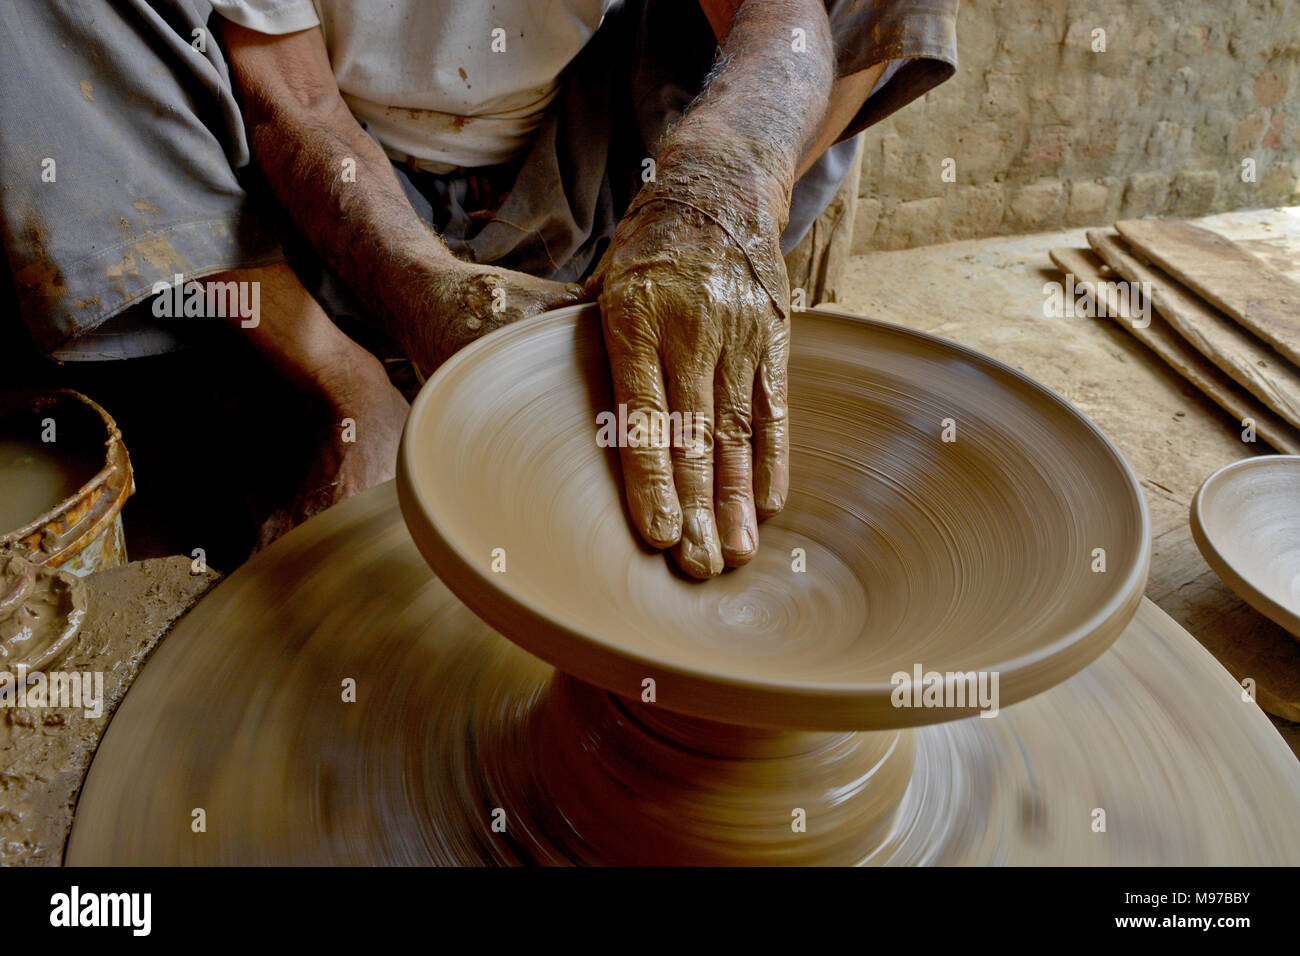 Olla de barro alfarero de Cachemira en un torno de alfarero tradicional en  su taller en las afueras de Srinagar, la capital de verano de Cachemira  administrada por India. Fabricación de vasijas